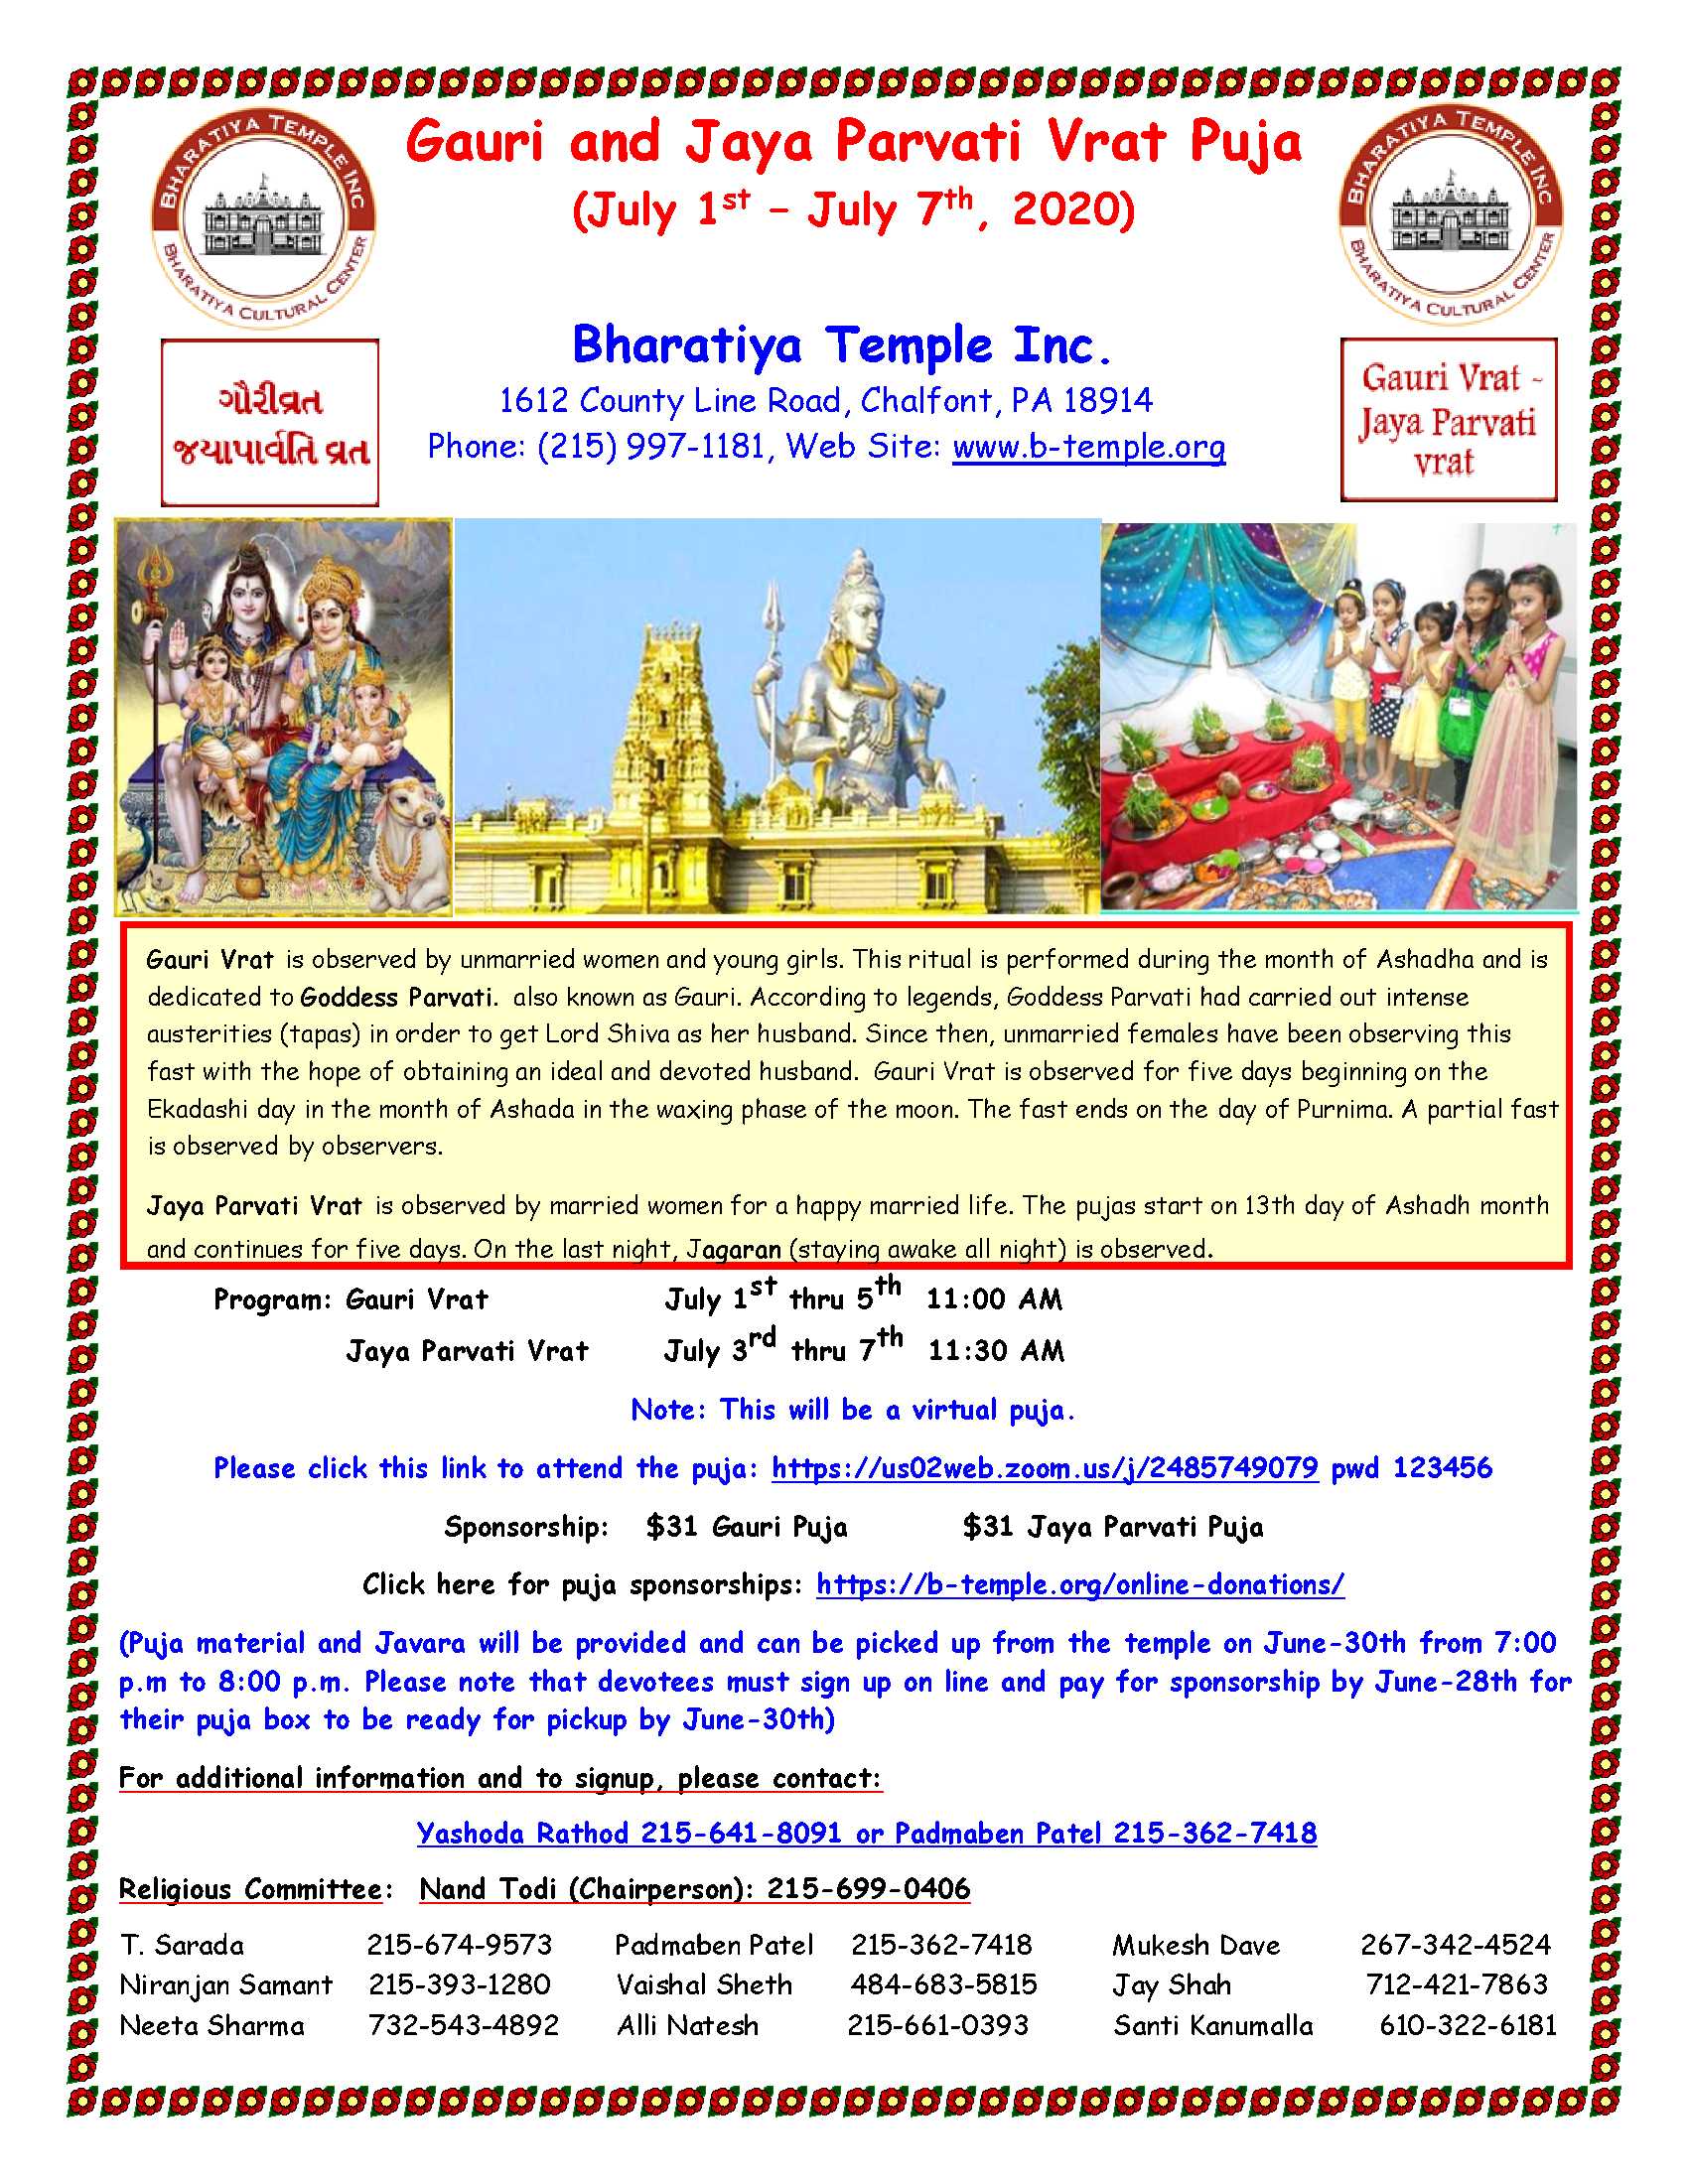 Gauri and Jaya Parvati Vrat July1st 7th Bharatiya Temple Bharatiya